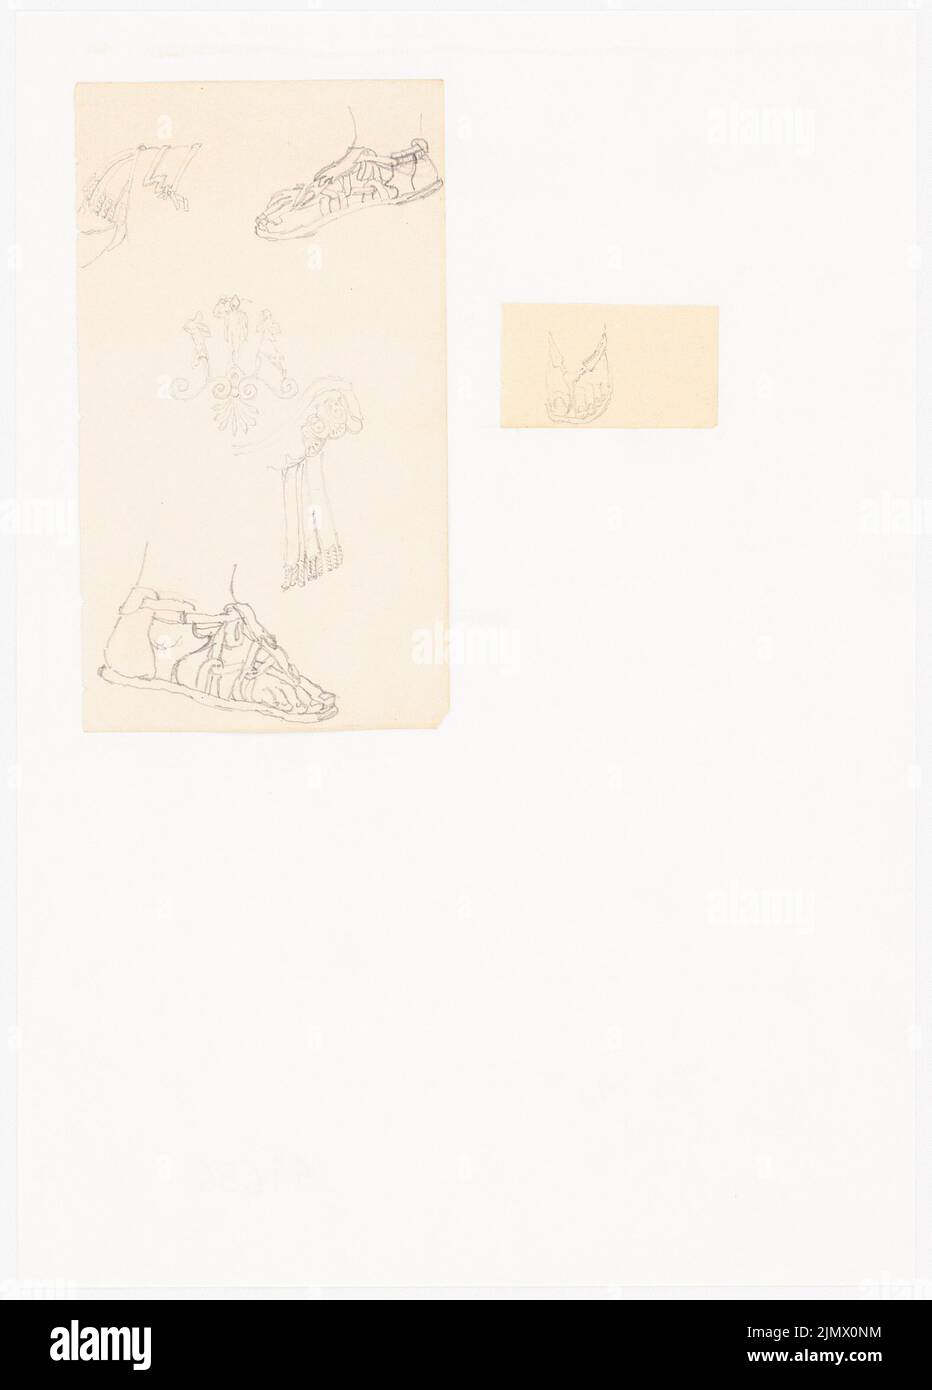 Quast Ferdinand von (1807-1877), pieds à l'orteil sandales et détails de robes roumains magnifiques (sans dat.): Détails de différents style romain et détails ornementaux des robes (deux feuilles avec courants d'air ultérieurs sur la terre et. Crayon sur papier, 30, 30, 3 x 21,7 cm (y compris les bords de balayage) Quast Ferdinand von (1807-1877): Füße in Zehensandalen und Détails rumänischer Prachtgewänder Banque D'Images